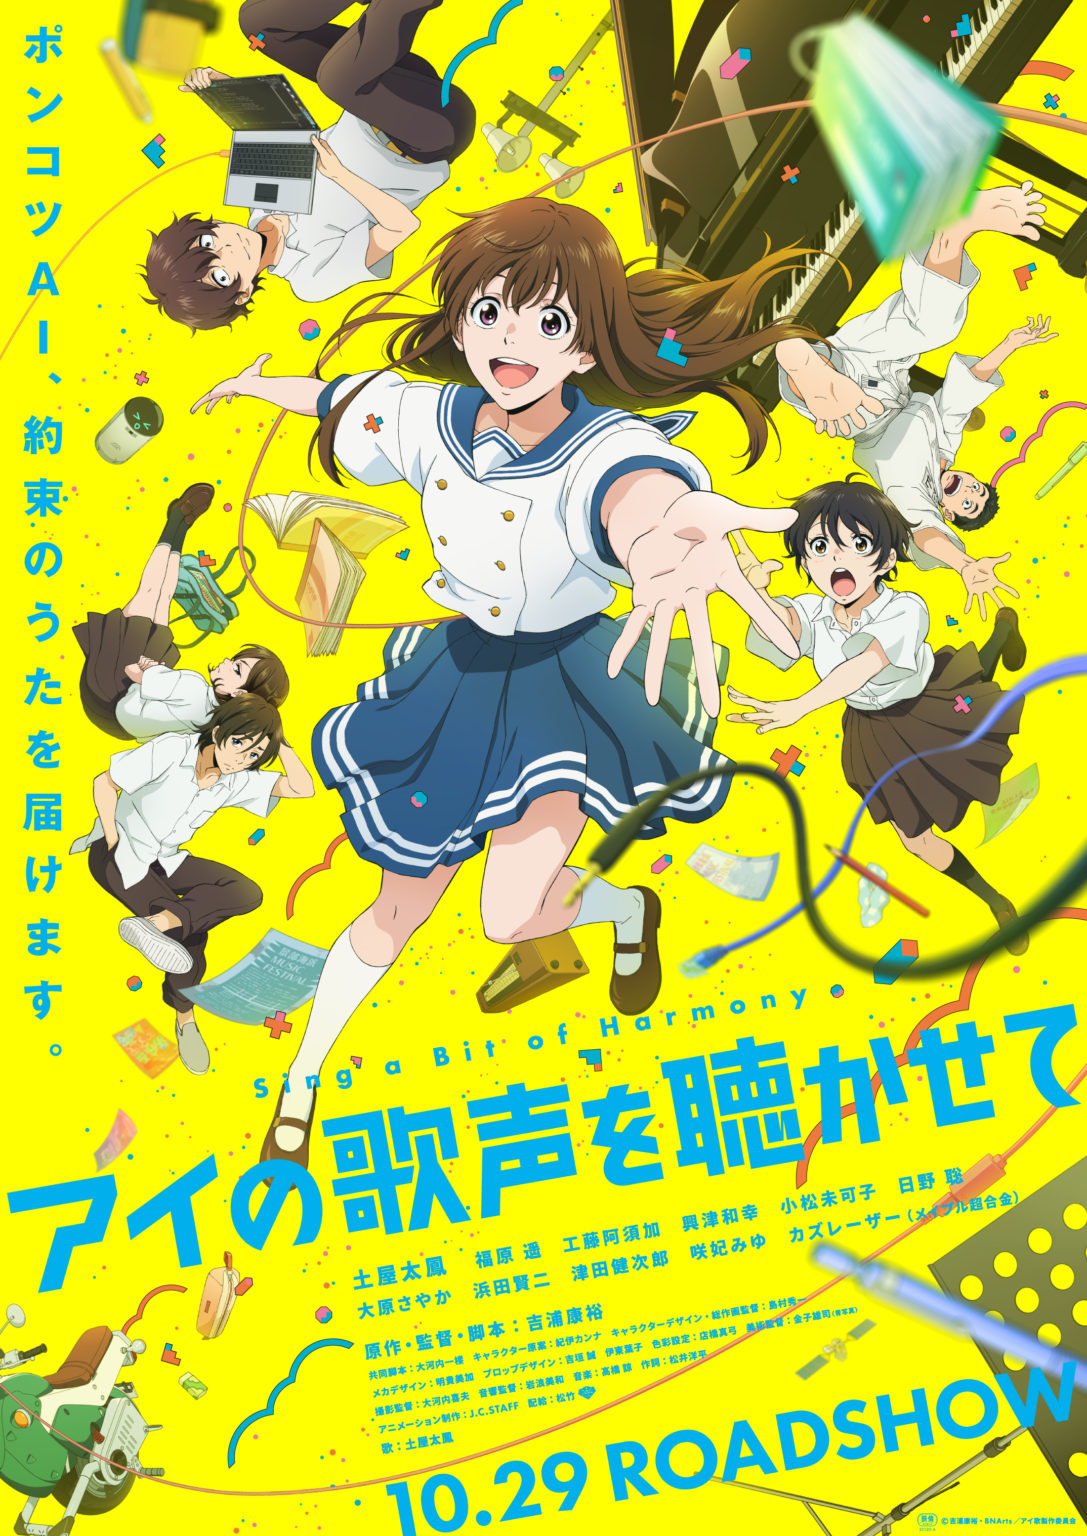 Anime Anime Movie Vertical Japanese Schoolgirl School Uniform Arms Reaching Schoolboys Anime Boys An 1087x1536